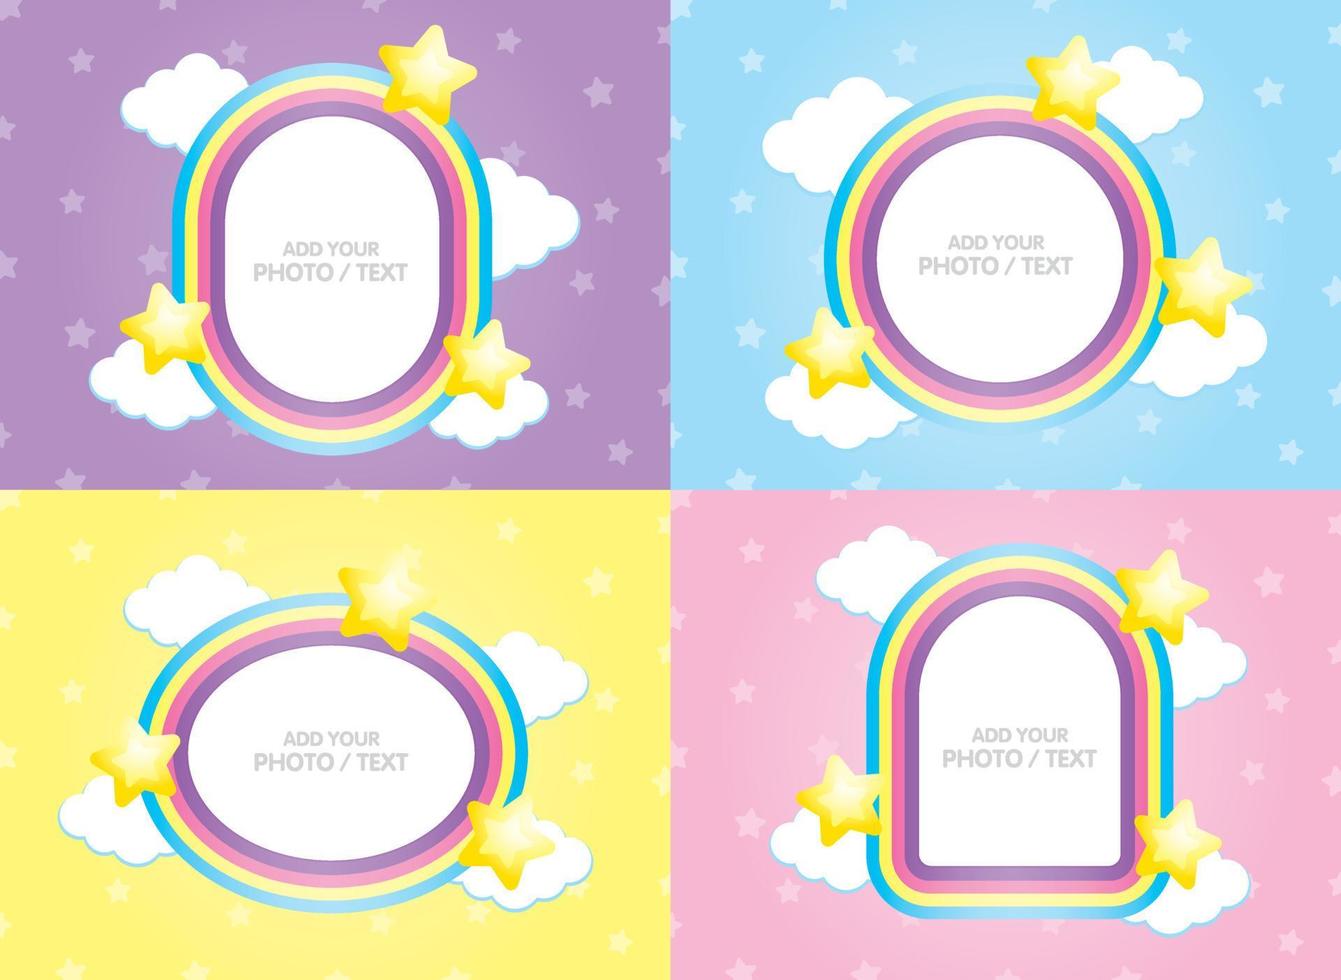 vetor de quadro de arco-íris kawaii definido para adicionar sua foto ou texto com elemento de nuvem e estrelas em fundo pastel